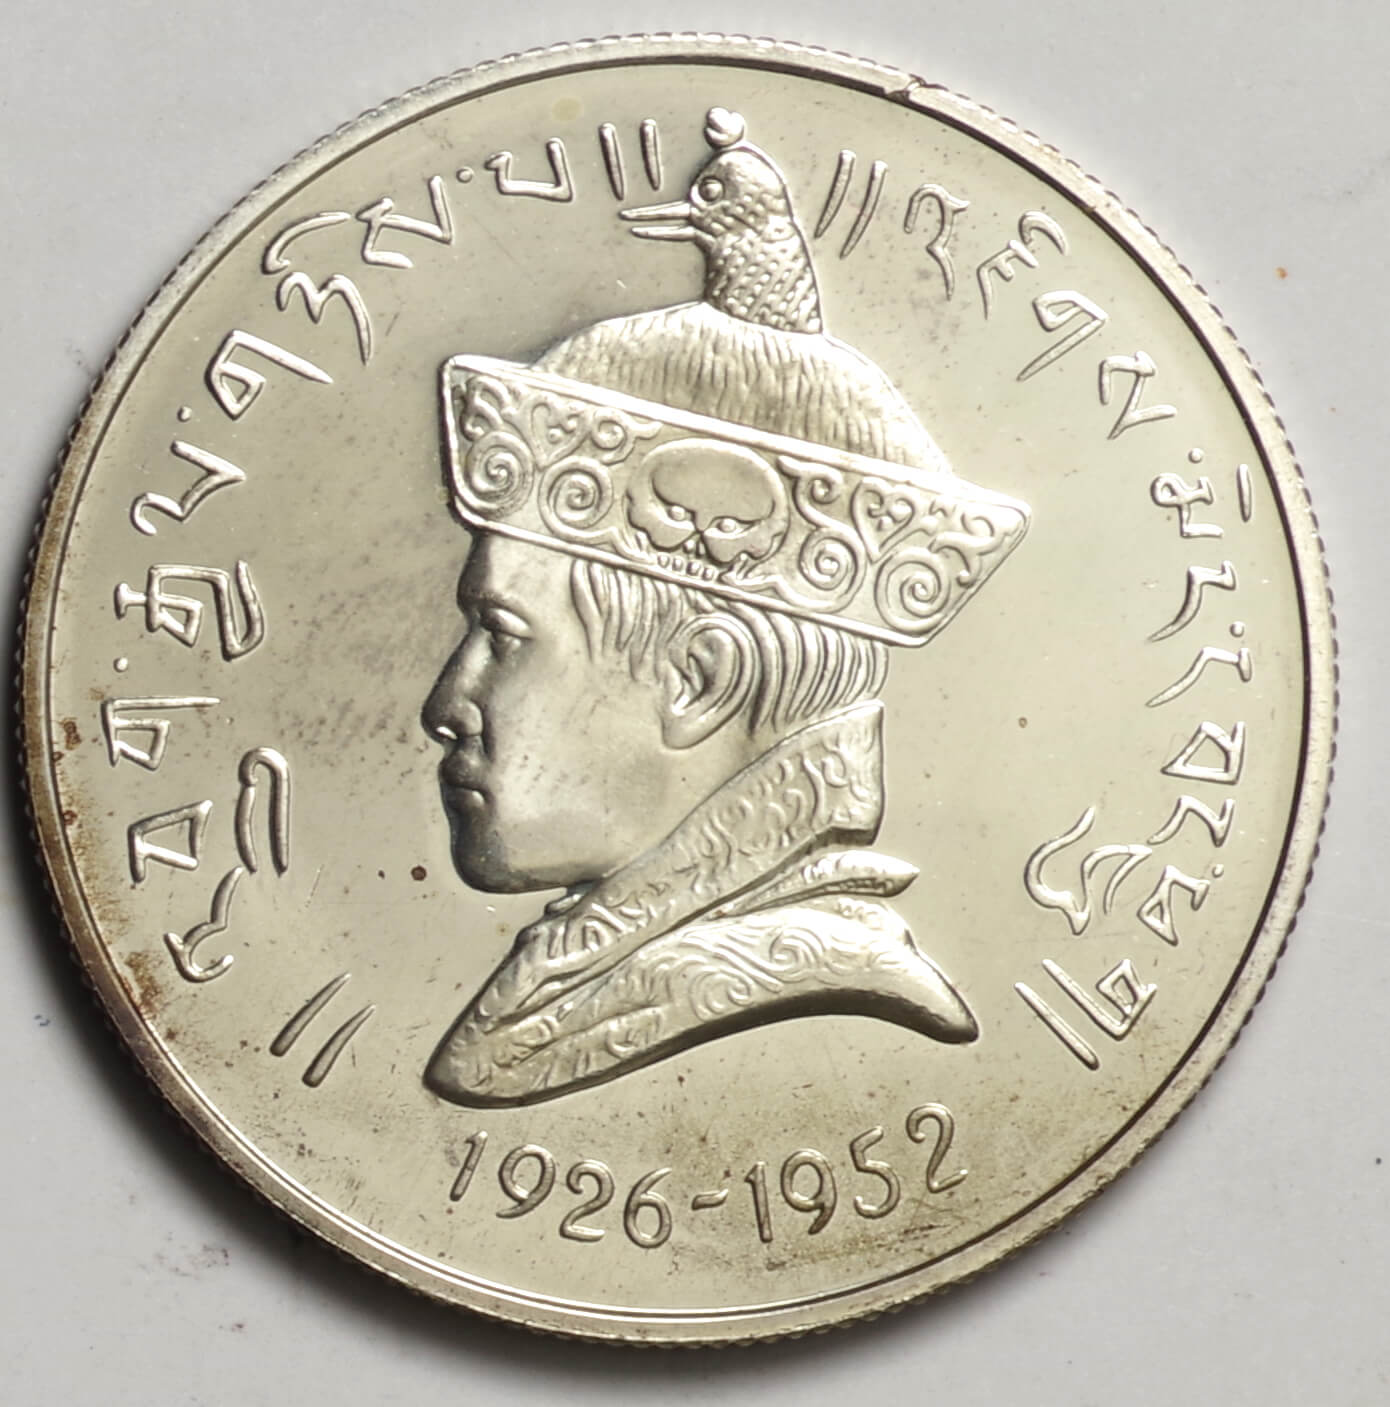 ﾌﾞｰﾀﾝ-Buhtan ジグミ･ワンチュク即位40周年記念 3ルピー銀貨 1966